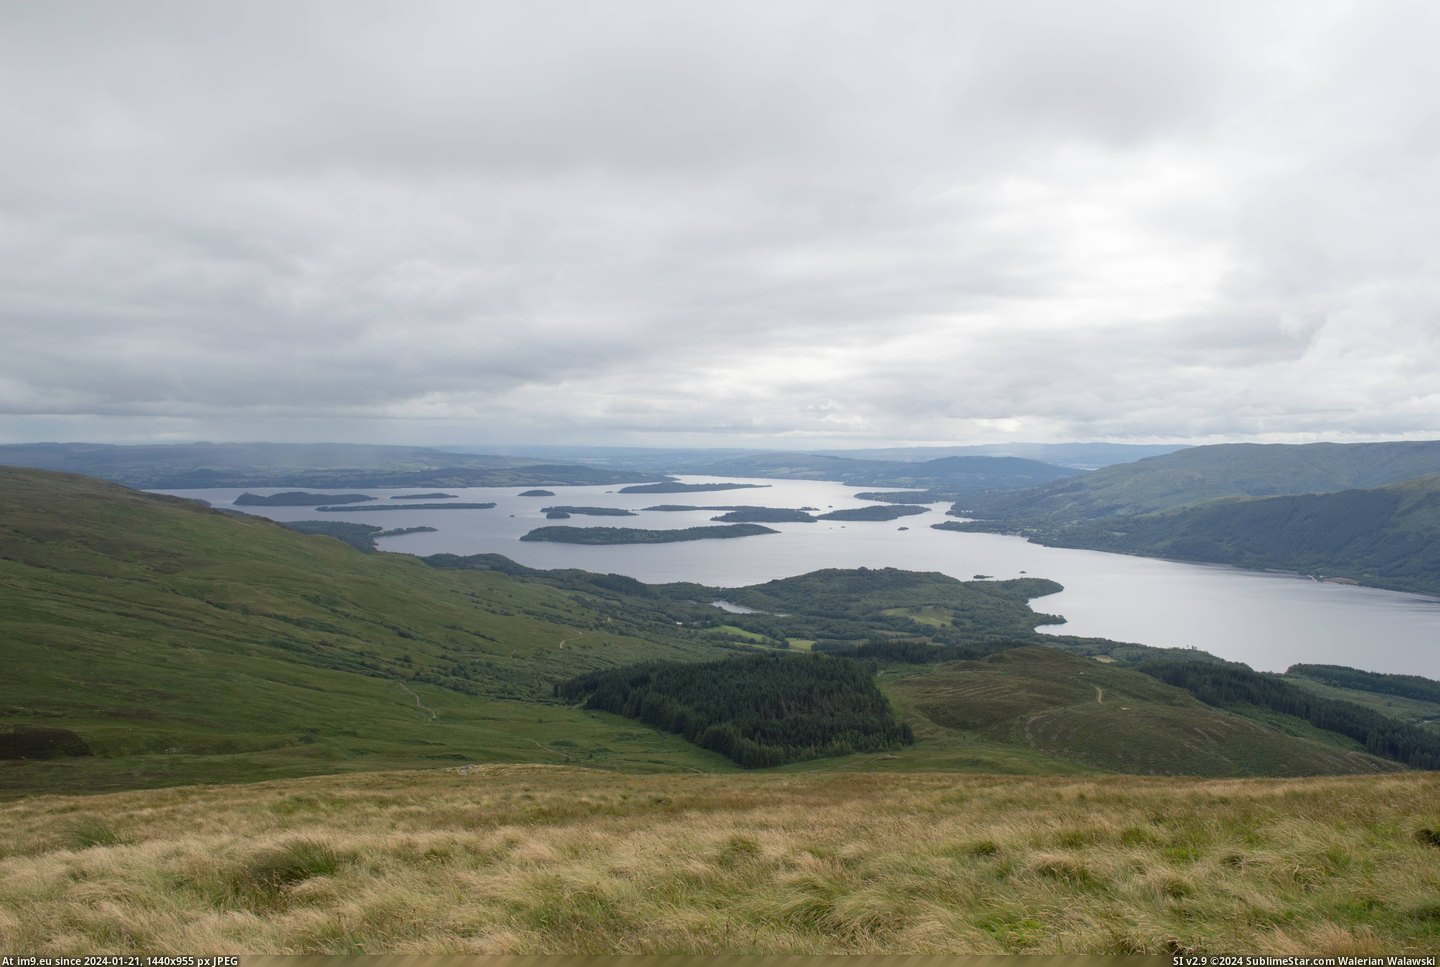 #Scotland #Ben #Loch #Summit [Earthporn] Loch Lomond from the summit of Ben Lomond, Scotland. [6016x4000] Pic. (Bild von album My r/EARTHPORN favs))